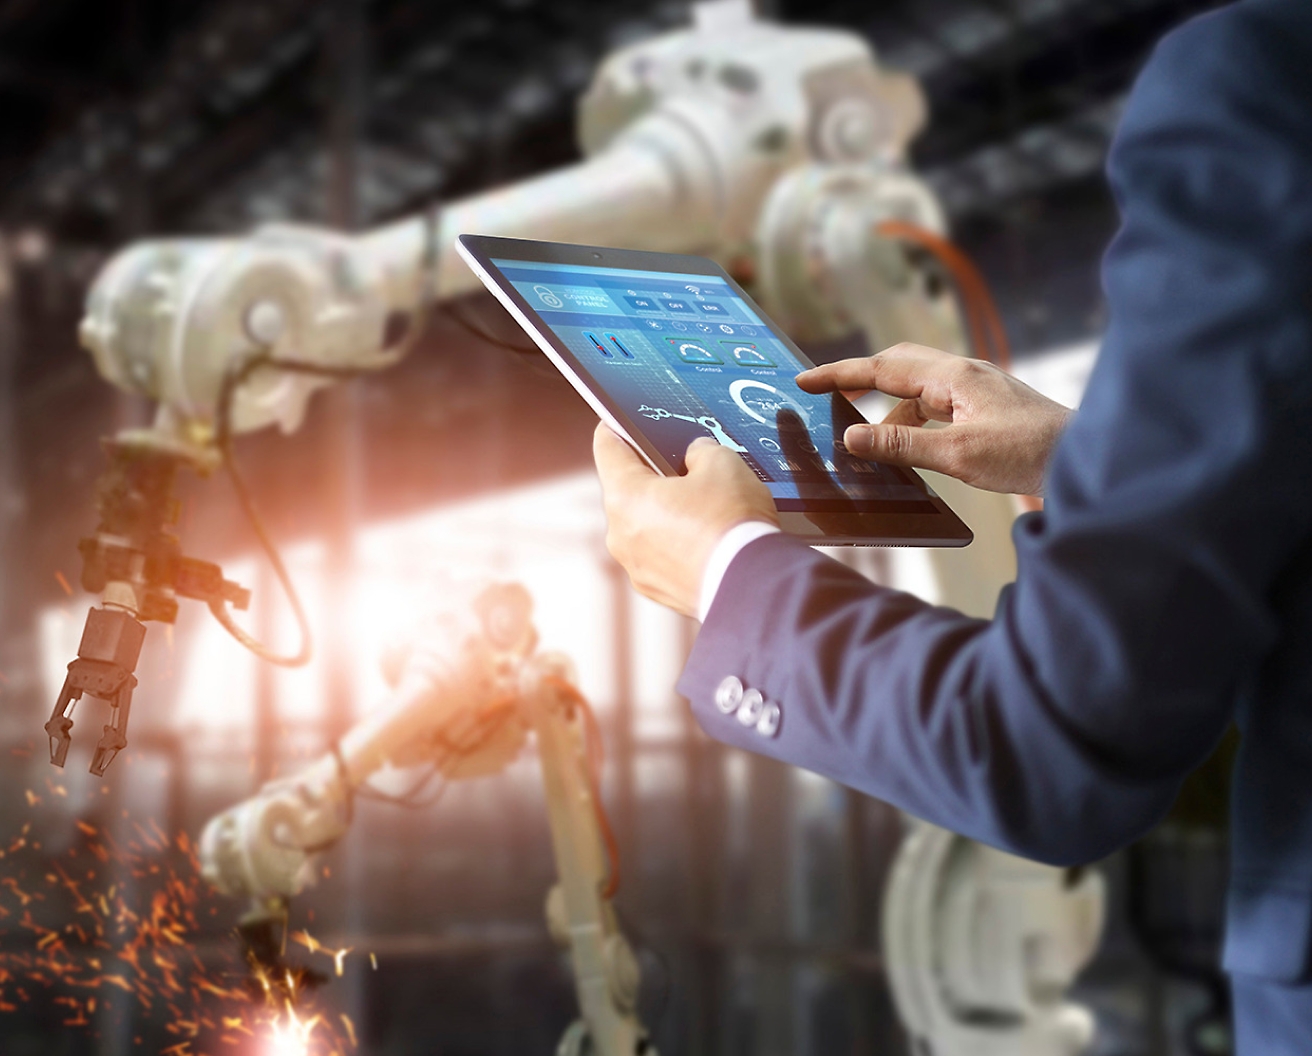 Eine Person in einer Fabrik kontrolliert über ein Tablet Roboterarme, was die Rolle hochentwickelter Automationstechnologie hervorhebt.